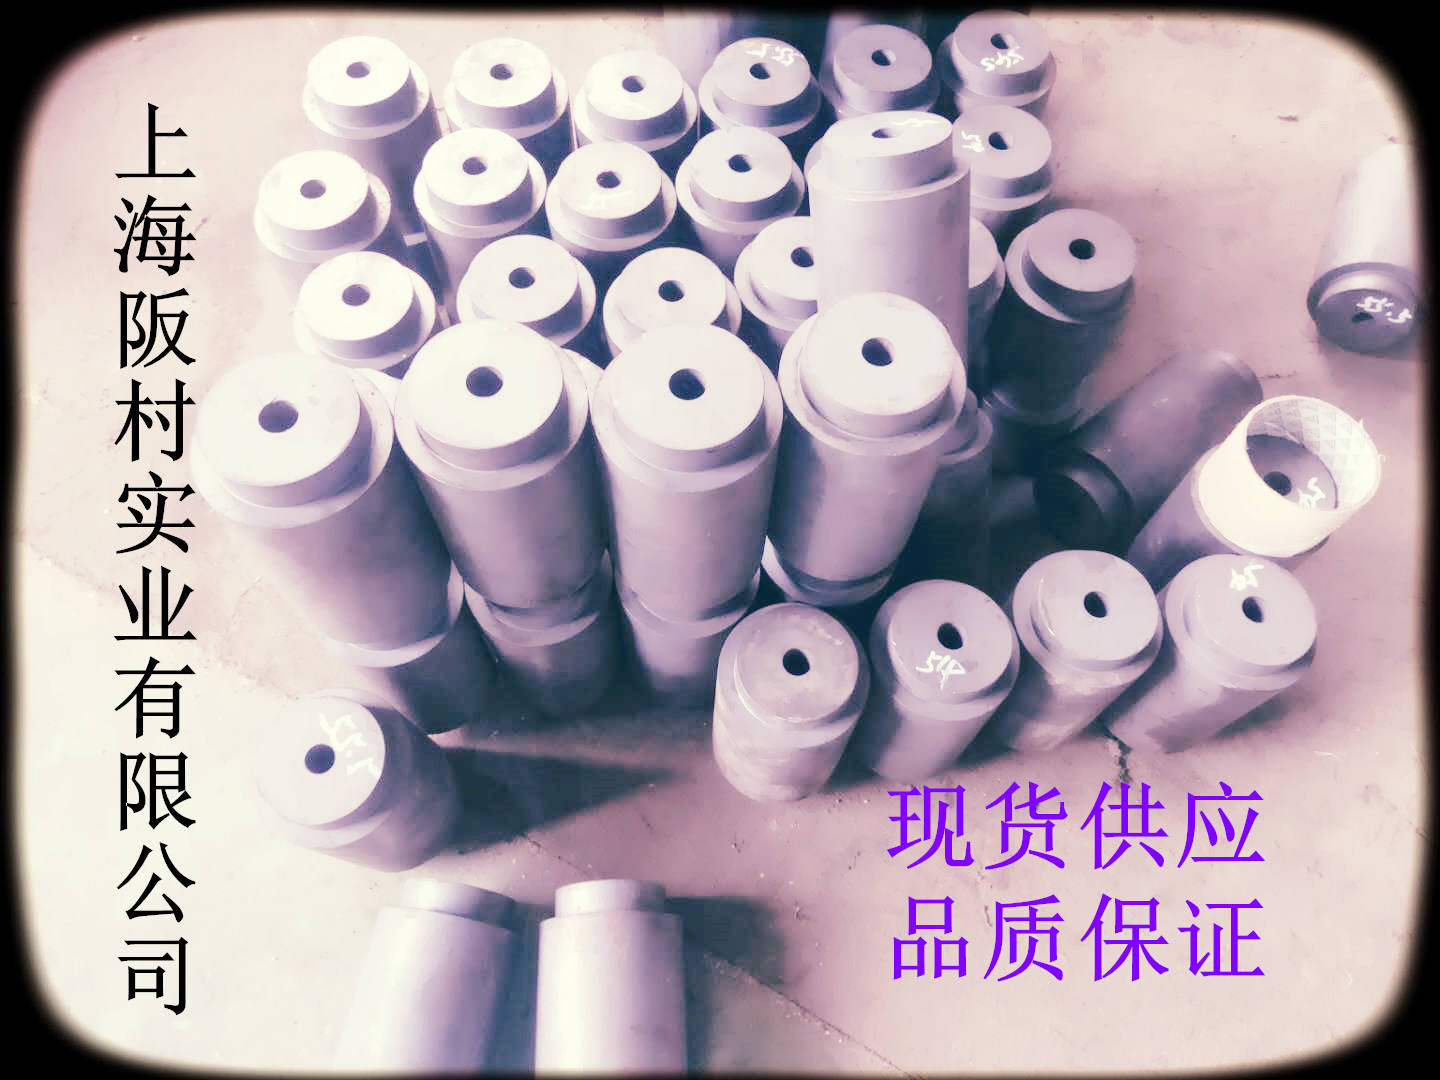 上海市3cr2w8v热锻模具钢厂家3cr2w8v热锻模具钢|3cr2w8v热锻模具钢|3cr2w8v钢材质|3cr2w8v钢|3cr2w8v铜压铸模具钢